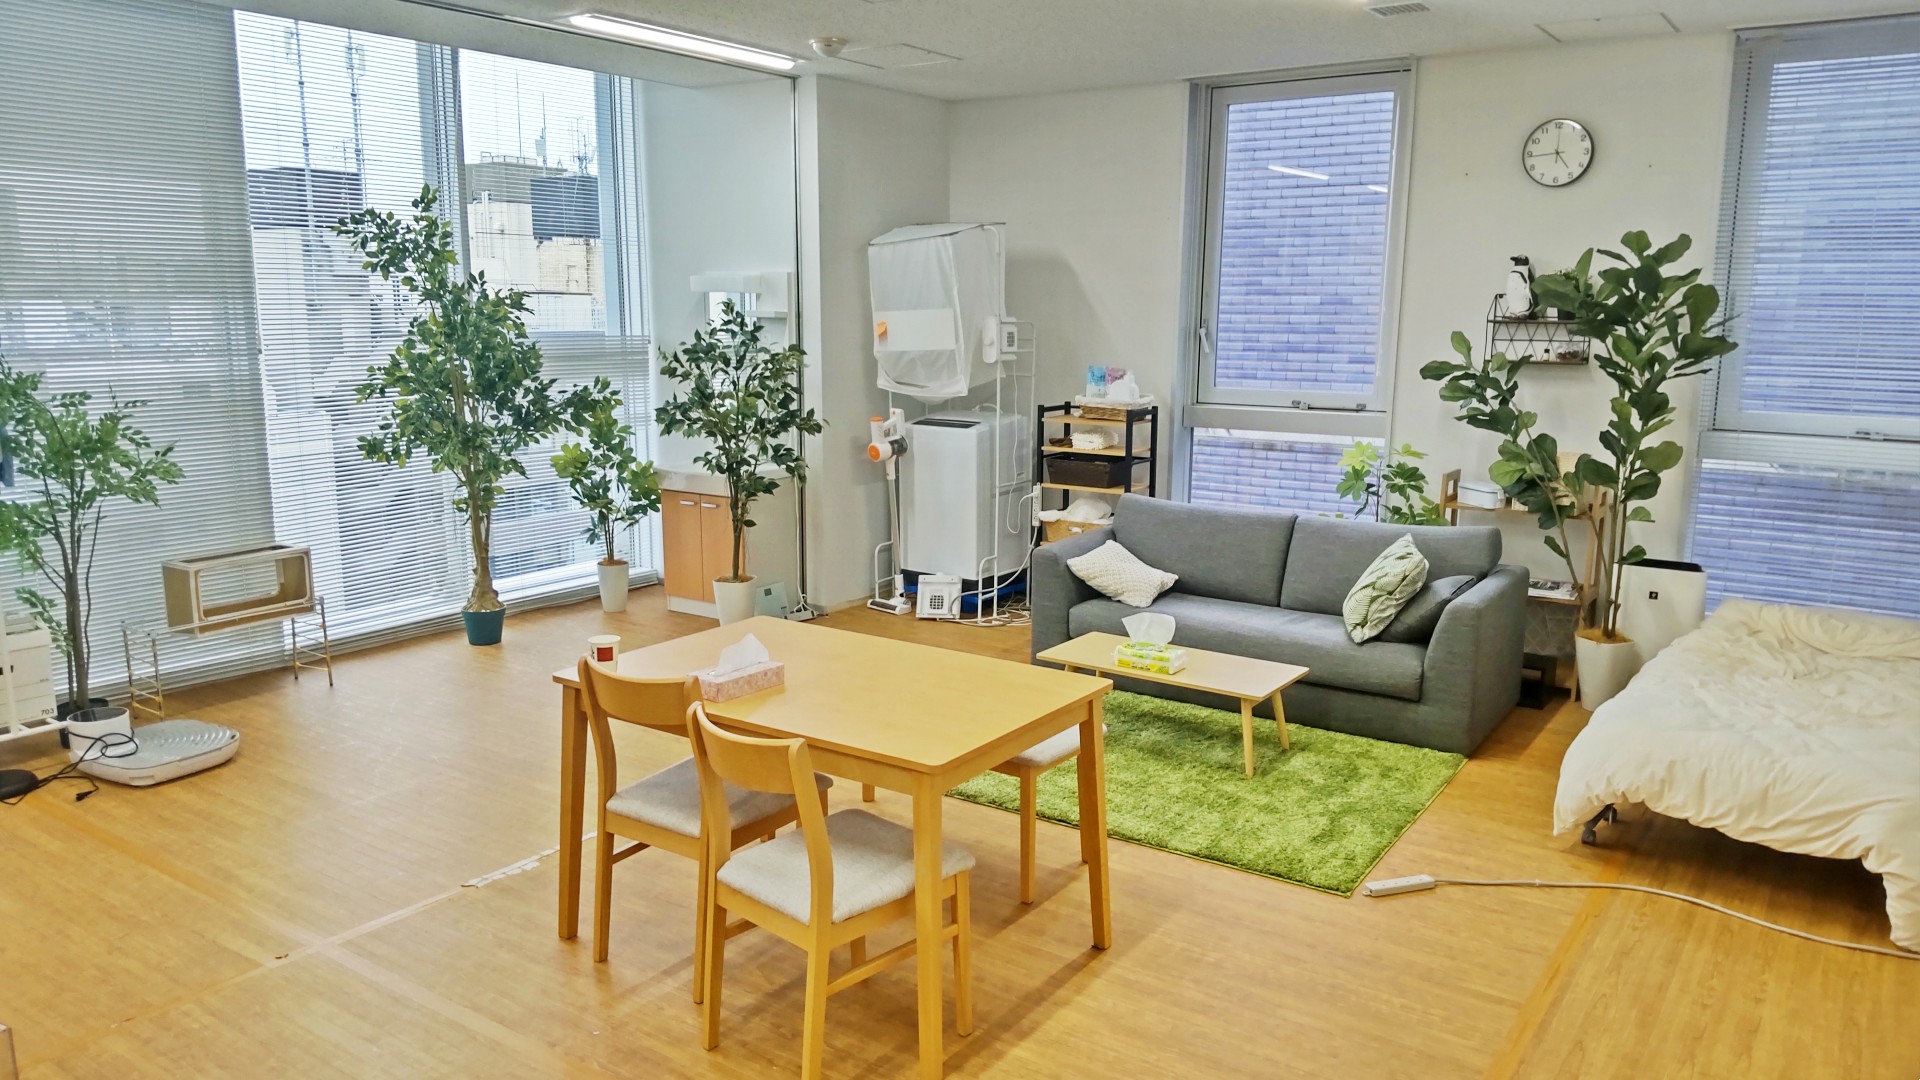 サンコー本社にある生活感溢れるワンルームを再現したハウススタジオ。